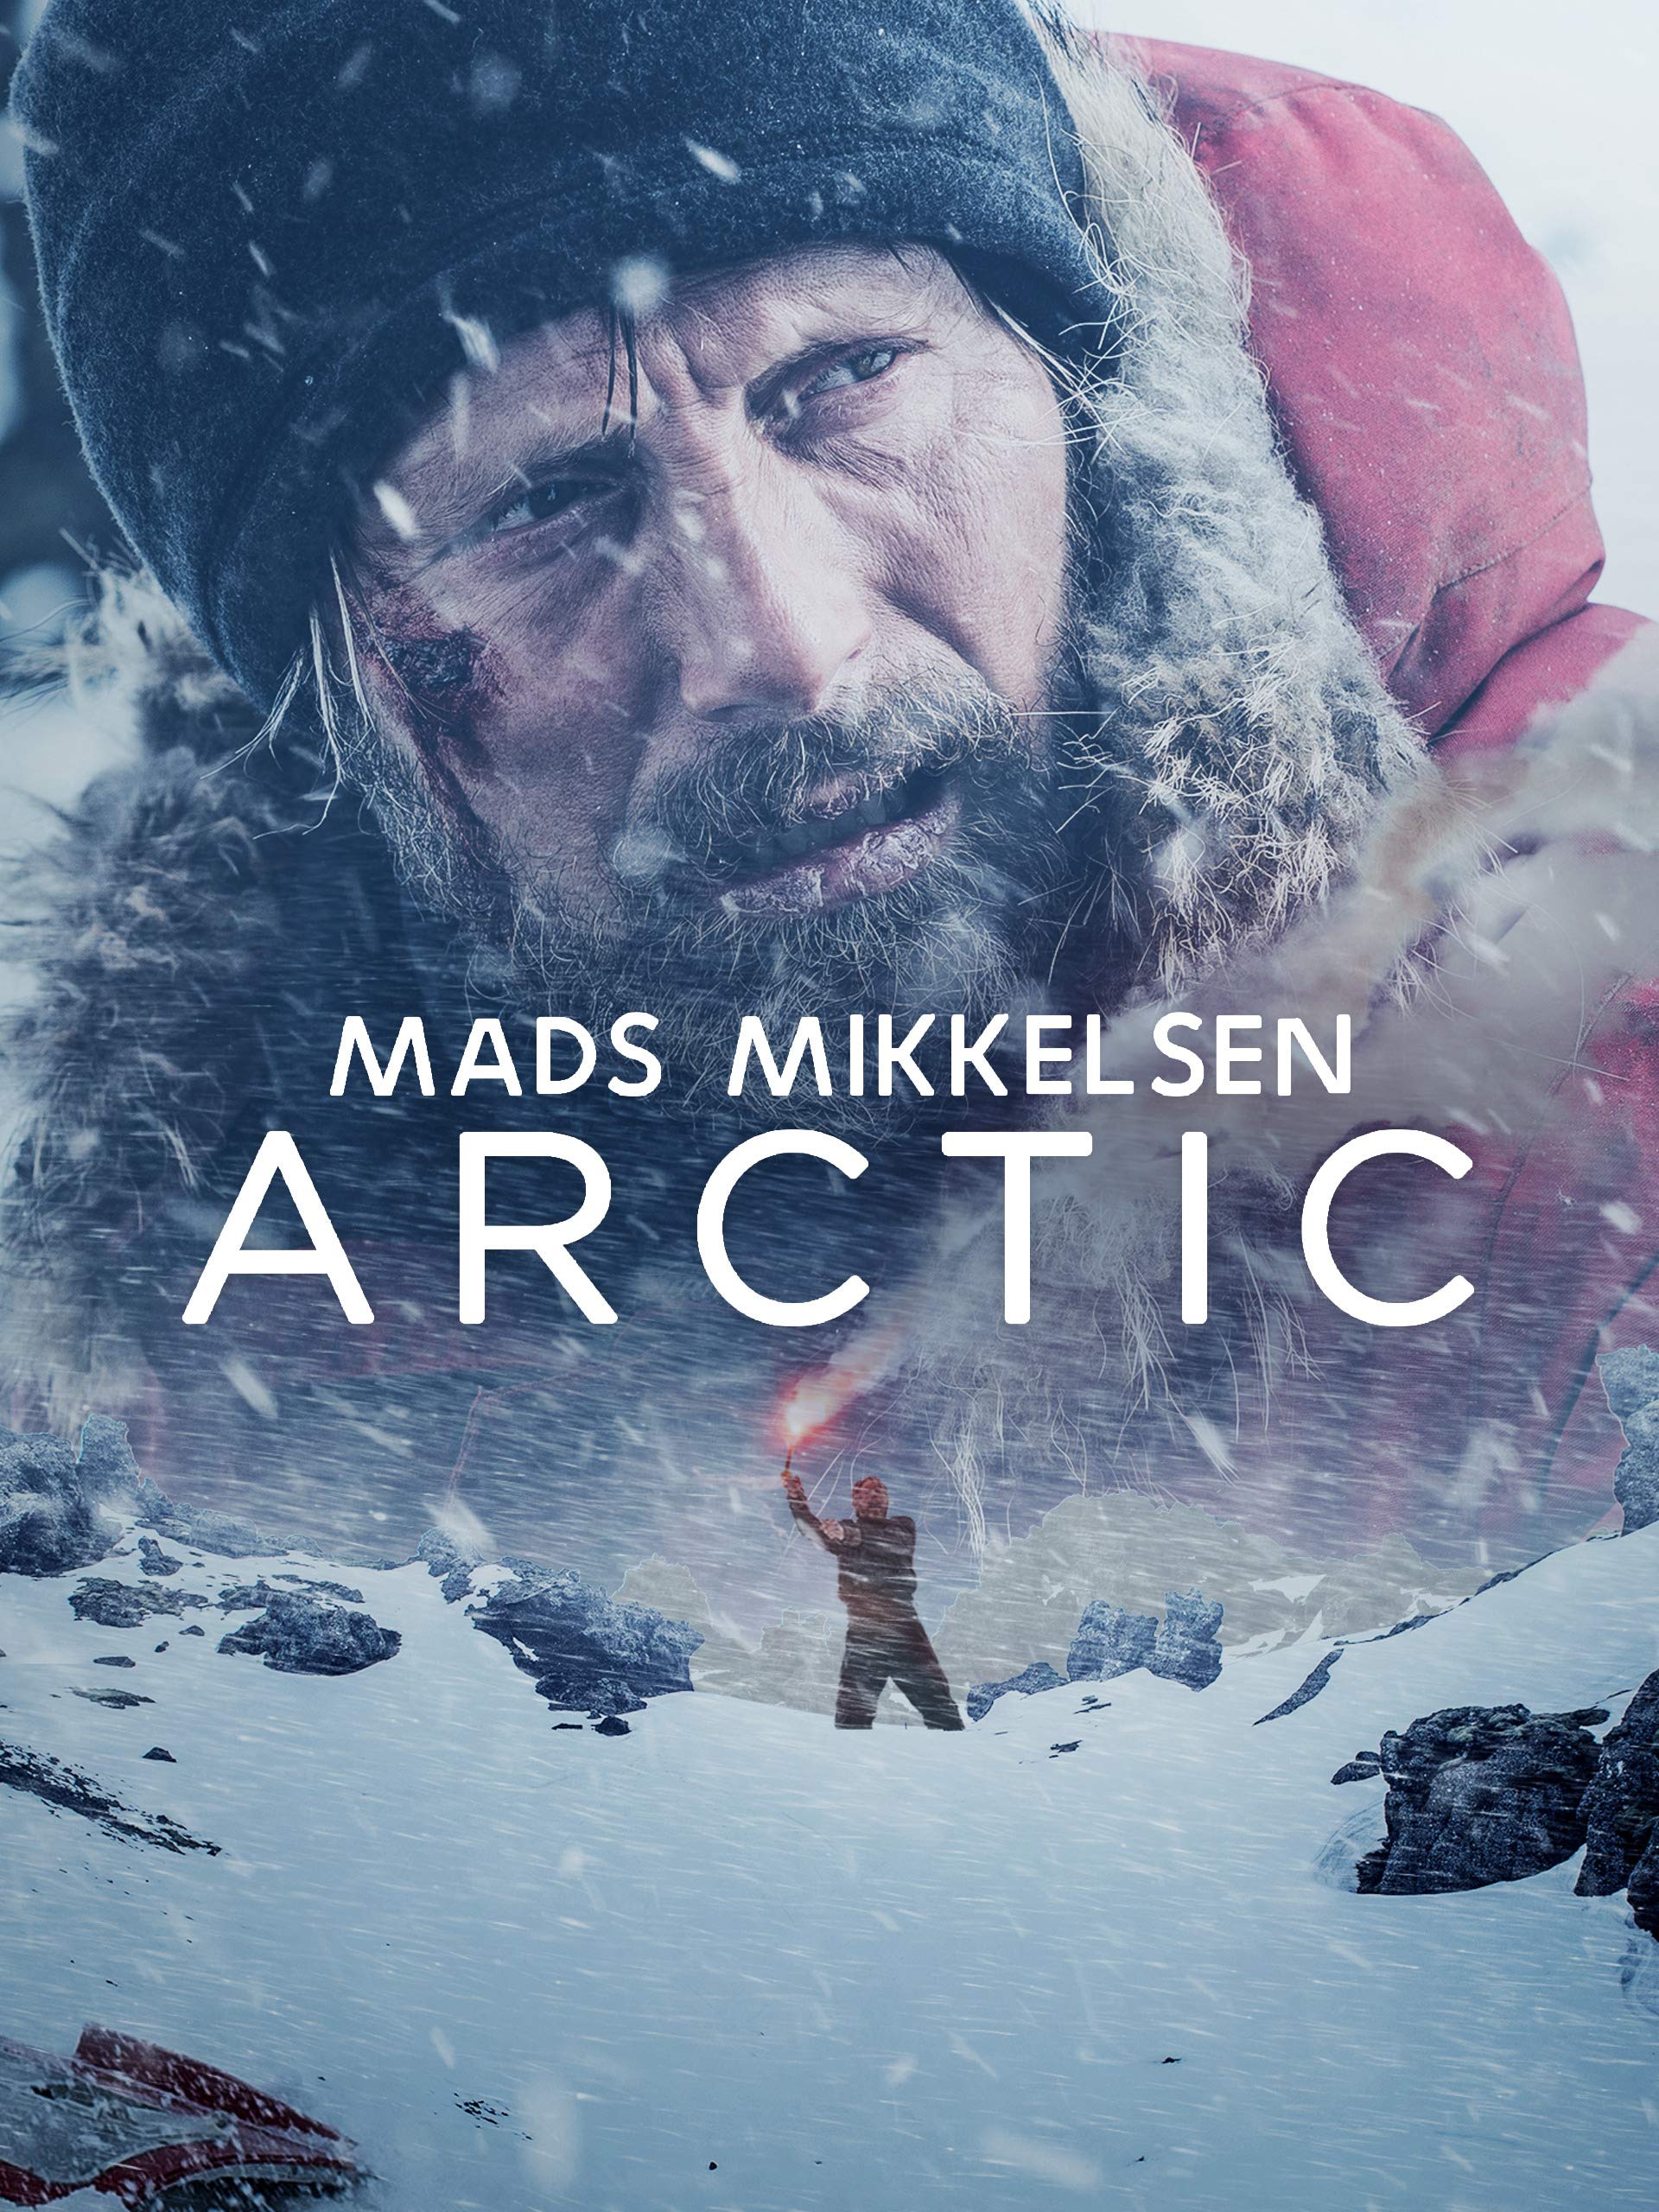 ดูหนังออนไลน์ Arctic 2018 เกือบตายห่า อย่าตาย เว็บดูหนังใหม่ฟรี